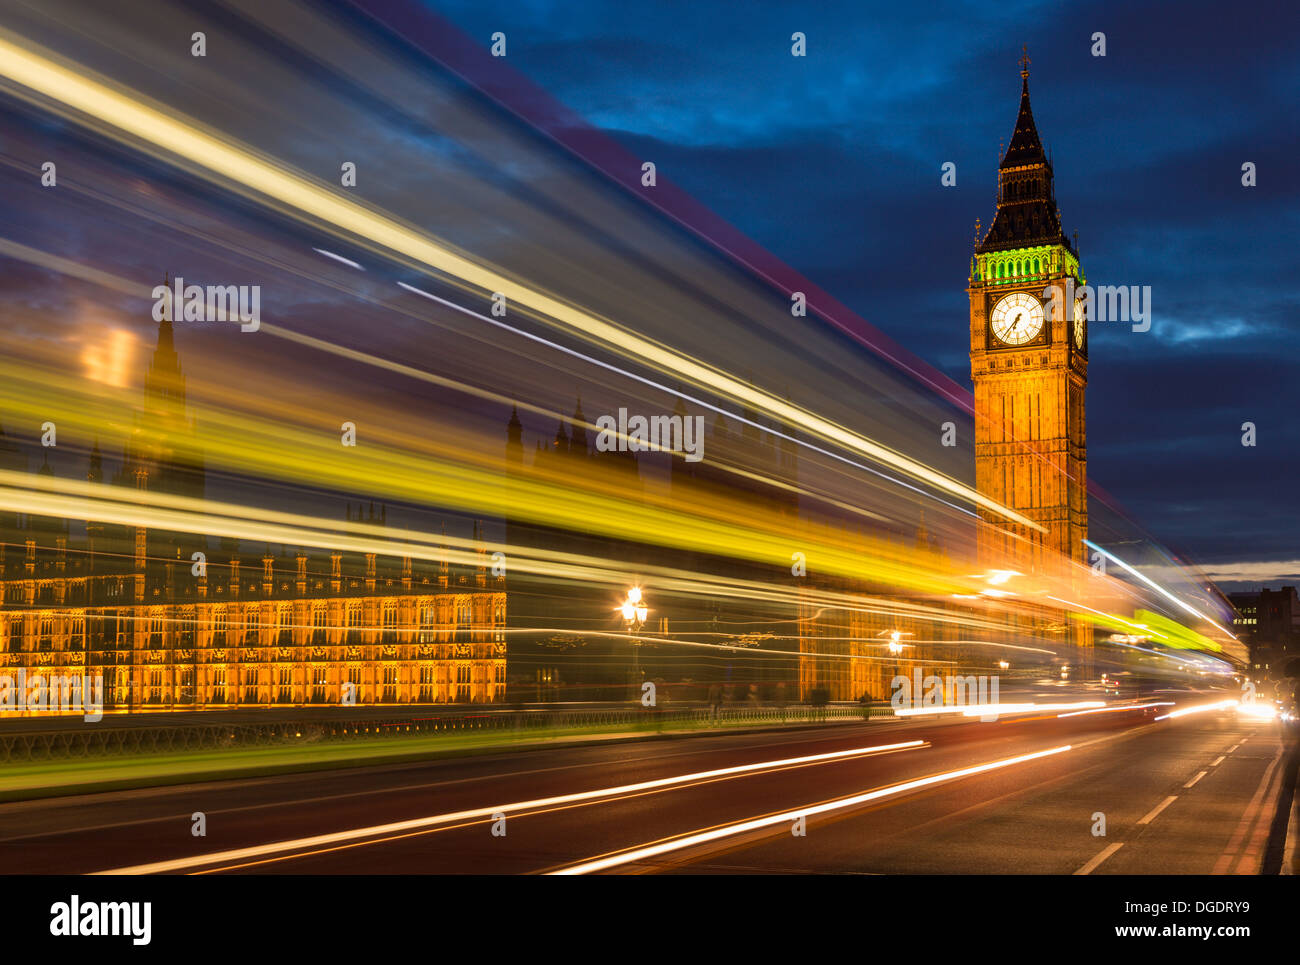 Les autobus de traînées le pont de Westminster et des chambres du Parlement dans la nuit l'Angleterre Banque D'Images